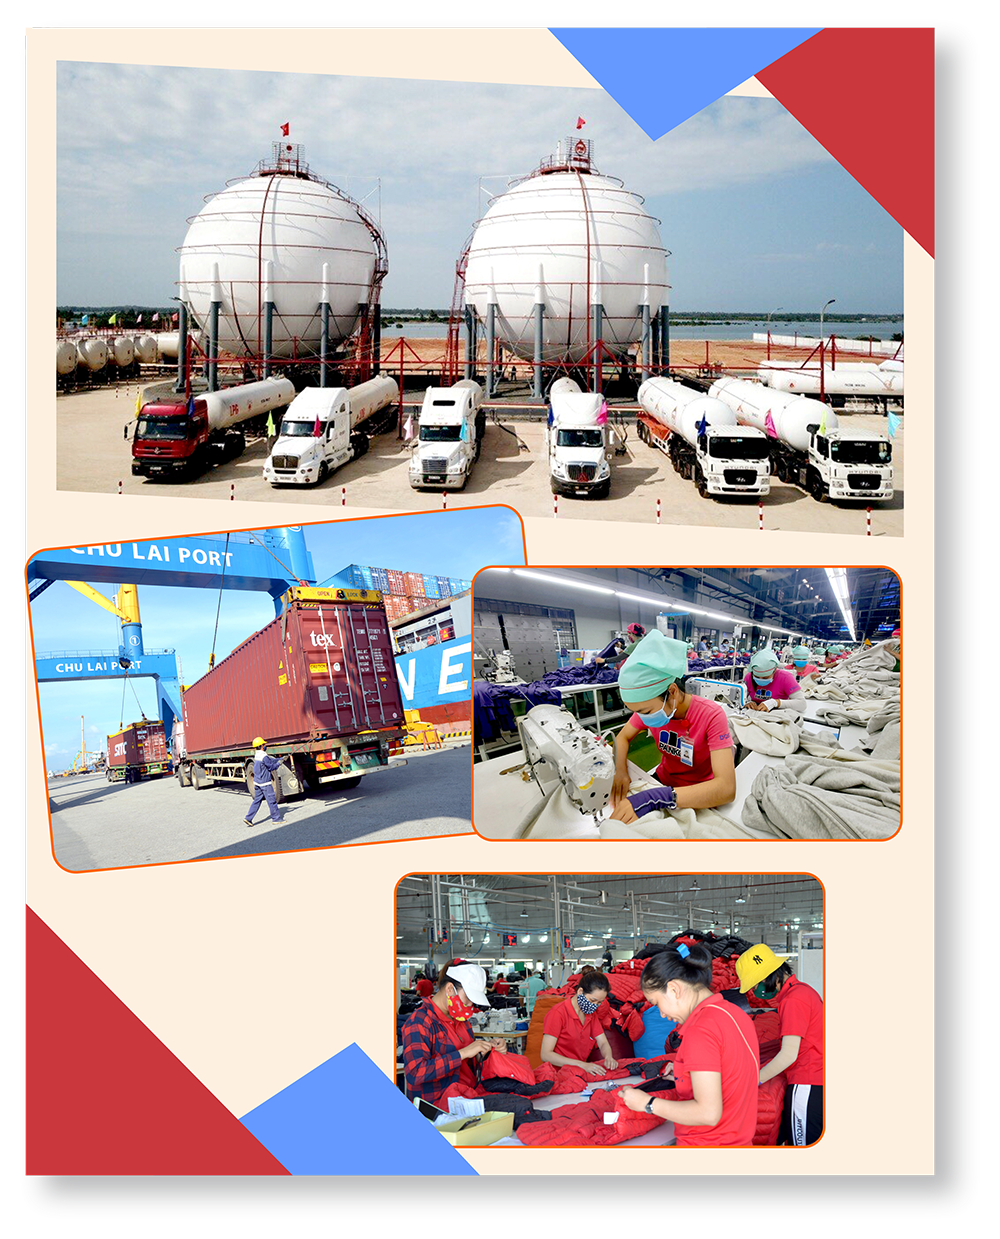 Hệ thống vận chuyển logicstics phát triển mạnh tại cảng Trường Hải - Chu Lai.